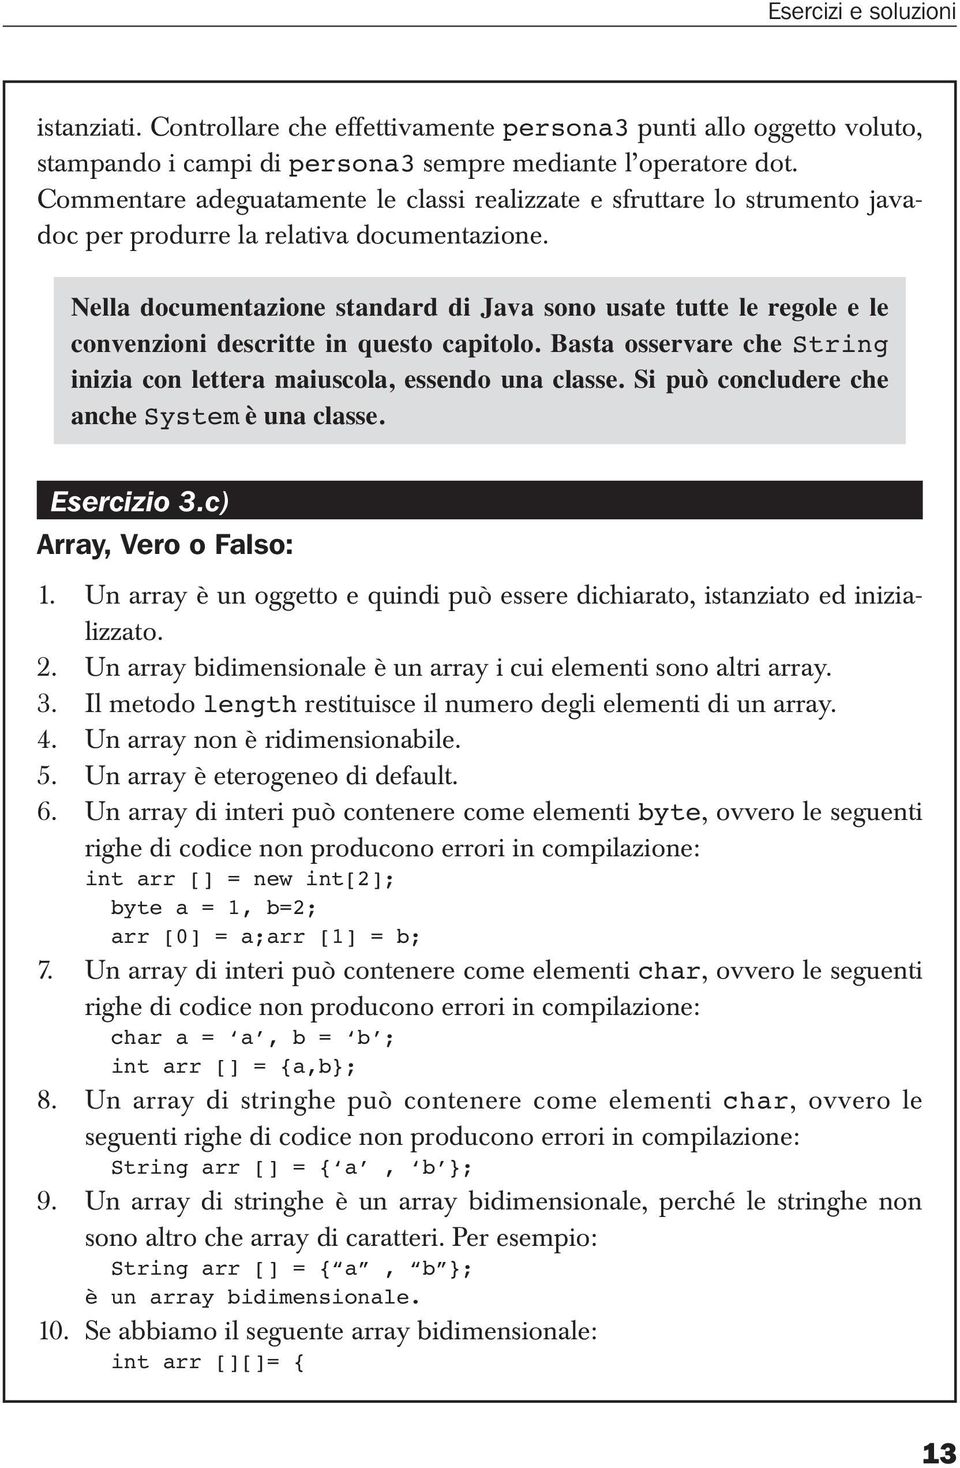 Nella documentazione standard di Java sono usate tutte le regole e le convenzioni descritte in questo capitolo. Basta osservare che String inizia con lettera maiuscola, essendo una classe.